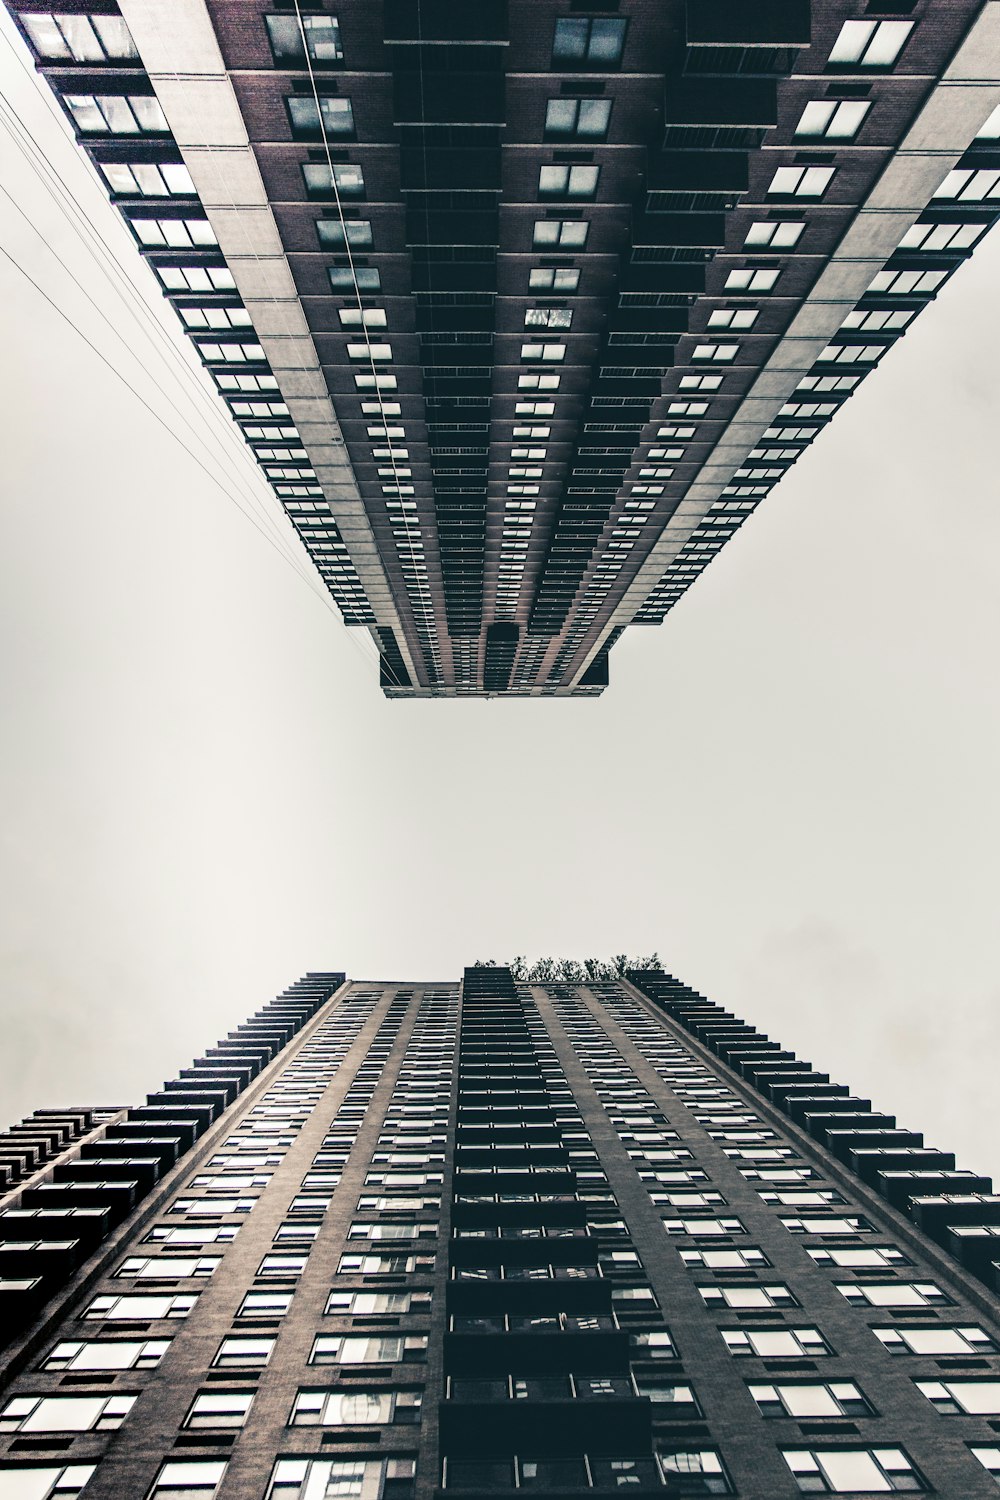 Vue de l’œil de ver photographie de deux immeubles de grande hauteur